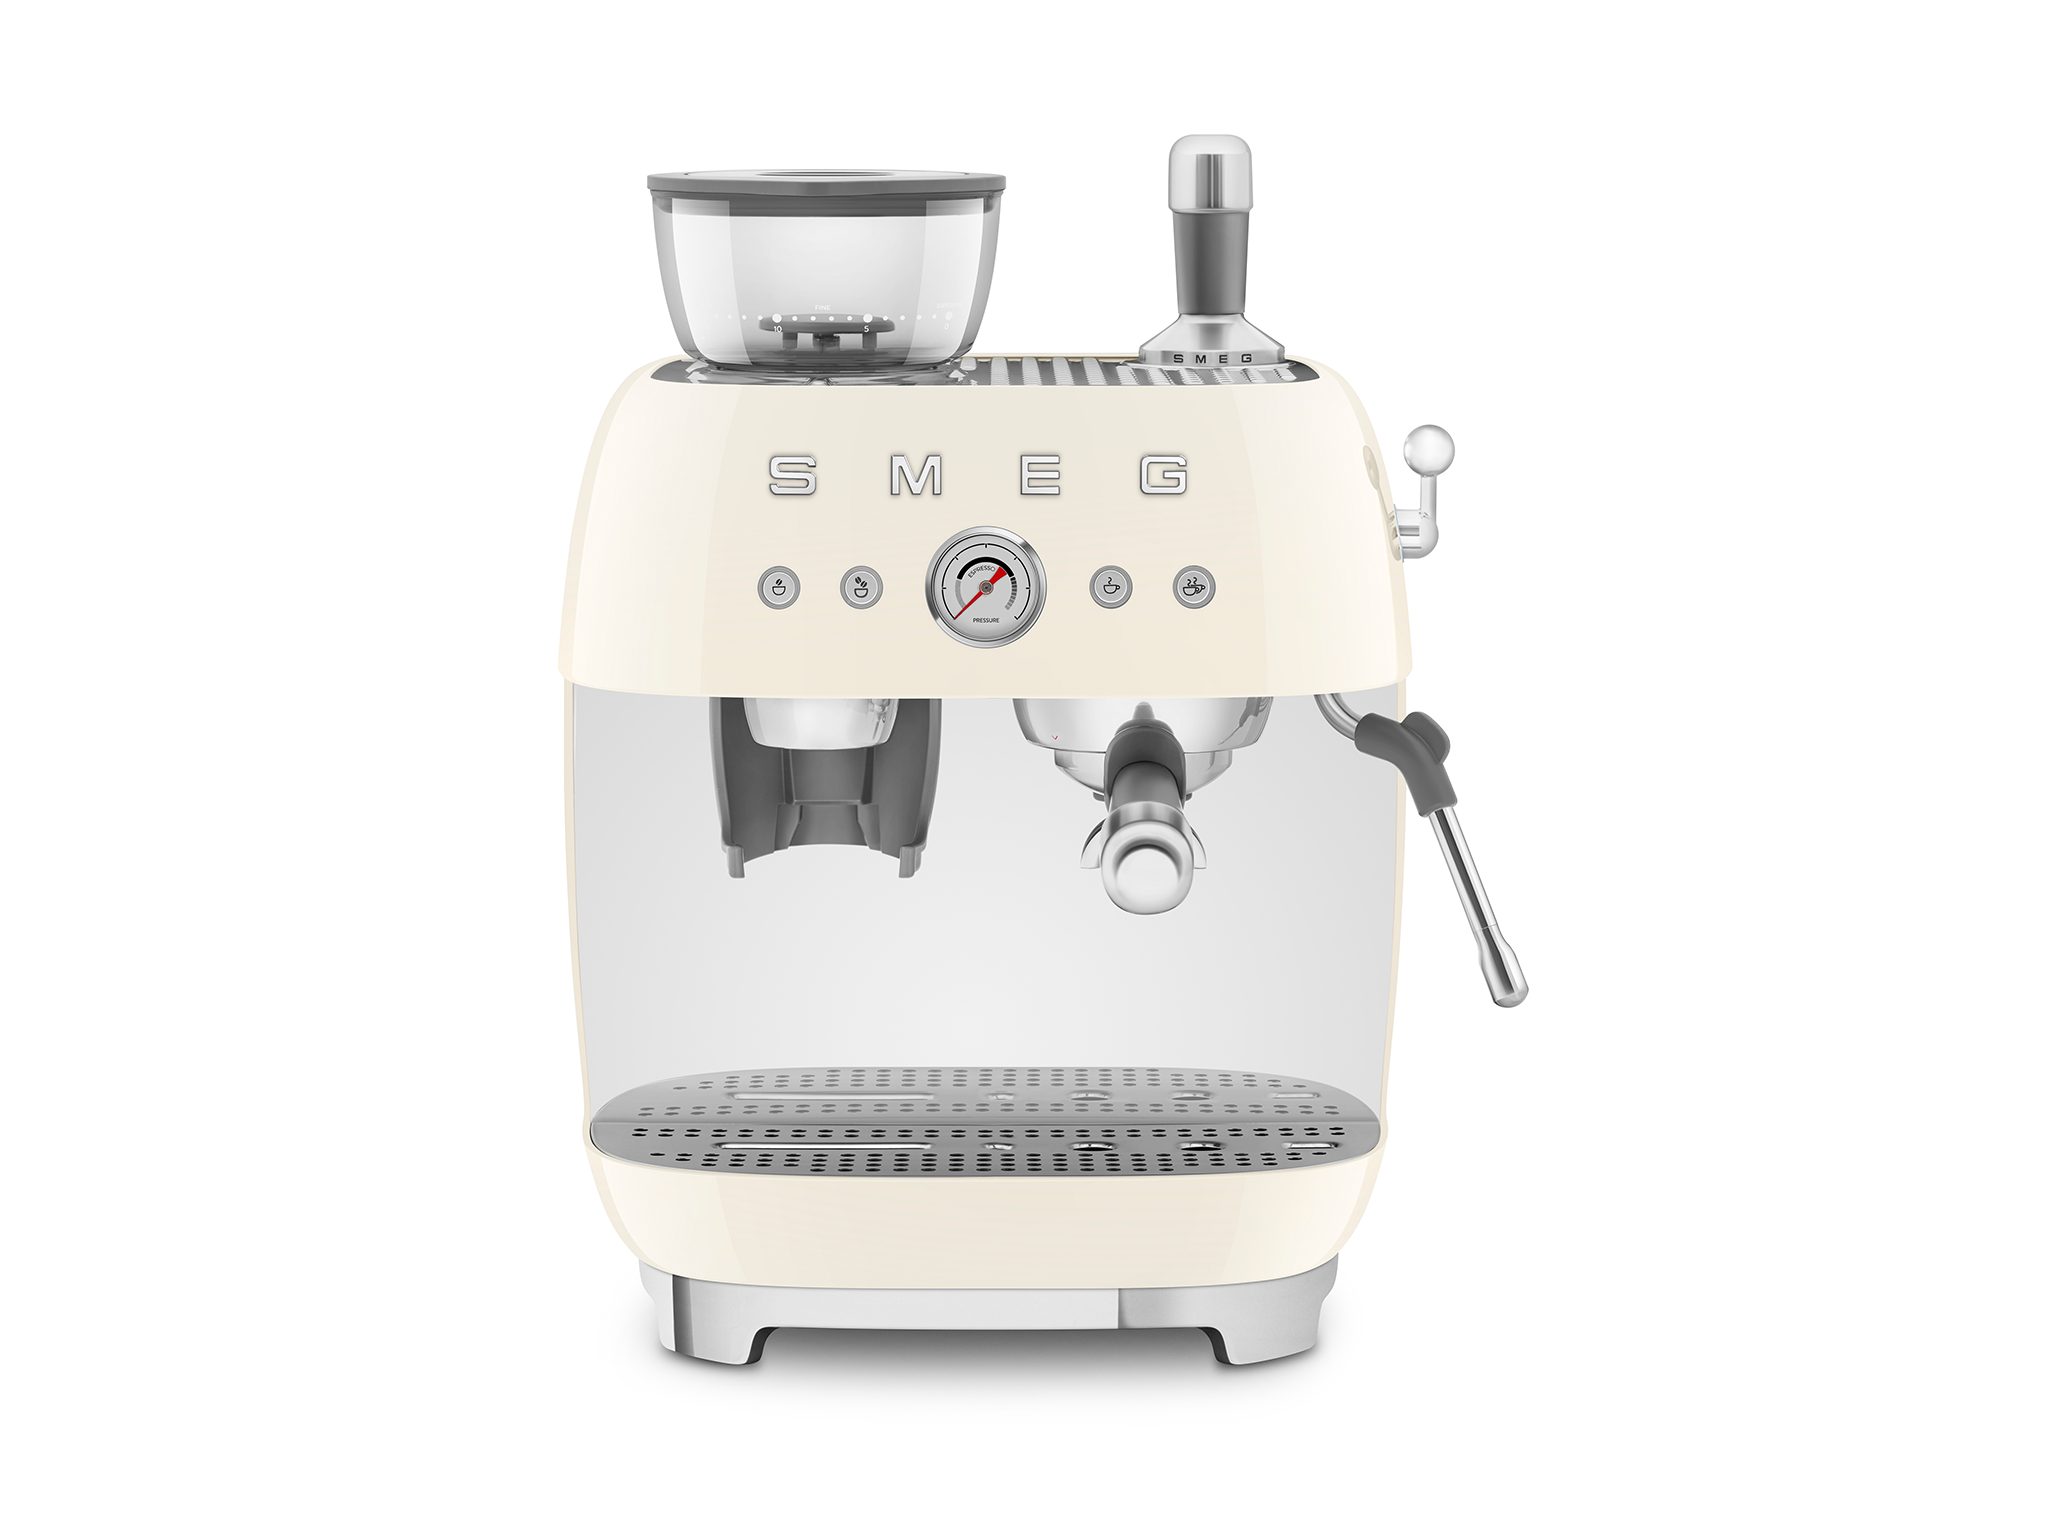 Smeg espresso coffee machine with coffee grinder